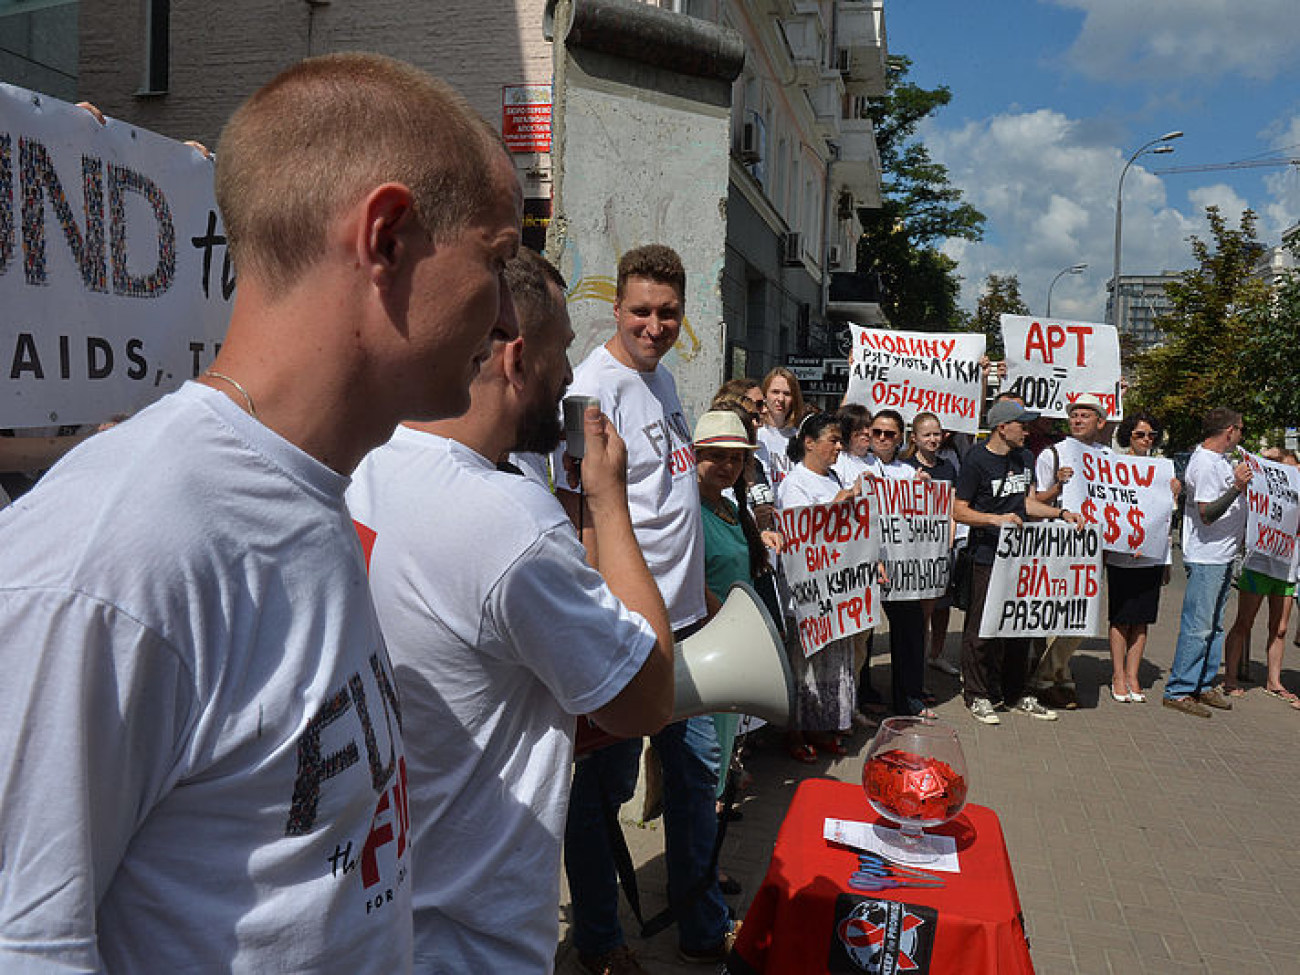 Украинские активисты просили правительство Германии не уменьшать финансирование программ Глобального Фонда по борьбе с ВИЧ / СПИД